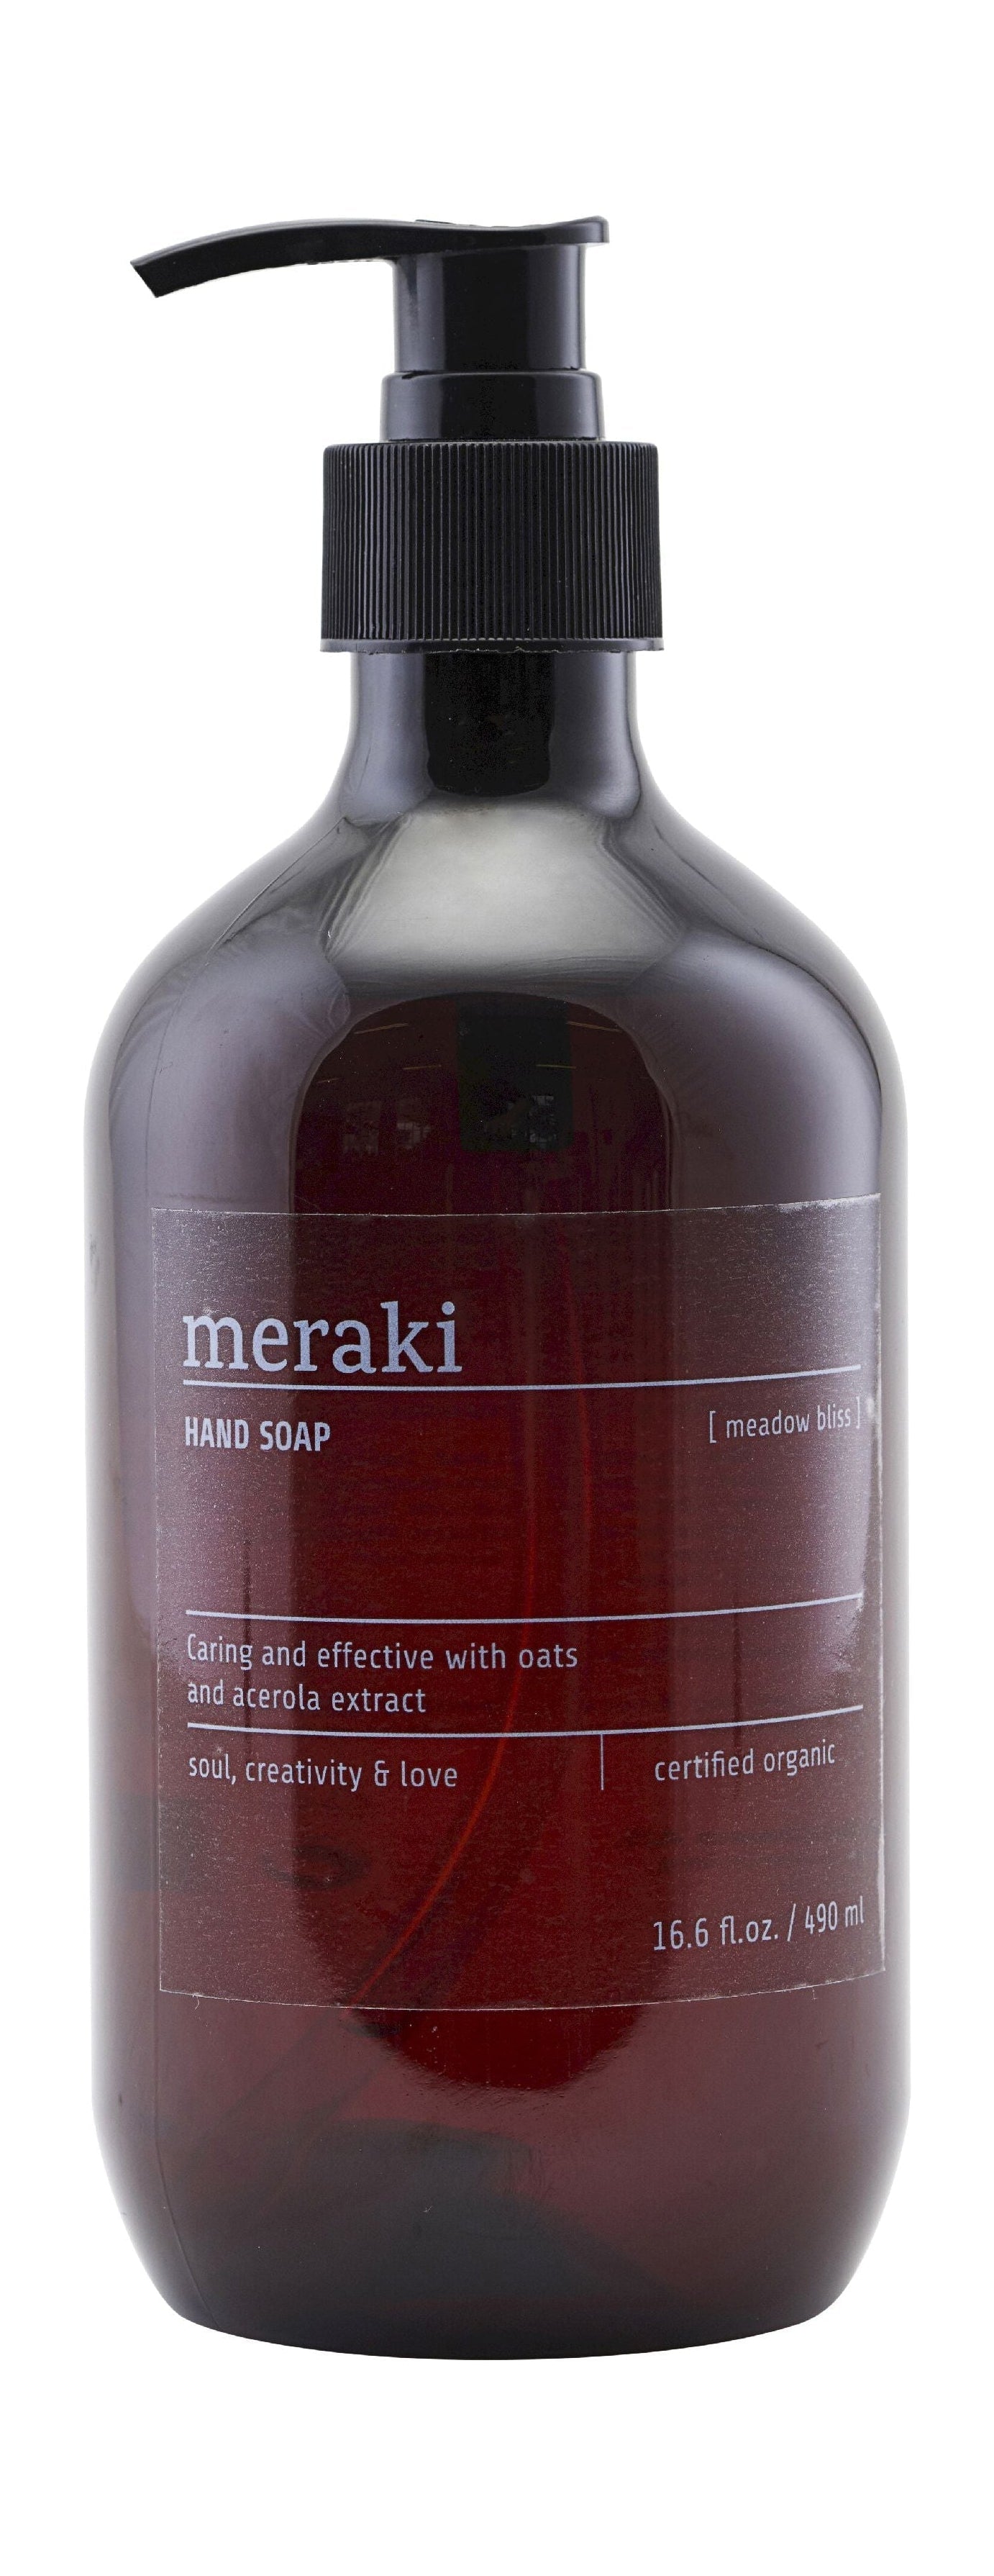 Meraki Hand Soap 490 Ml, Meadow Bliss